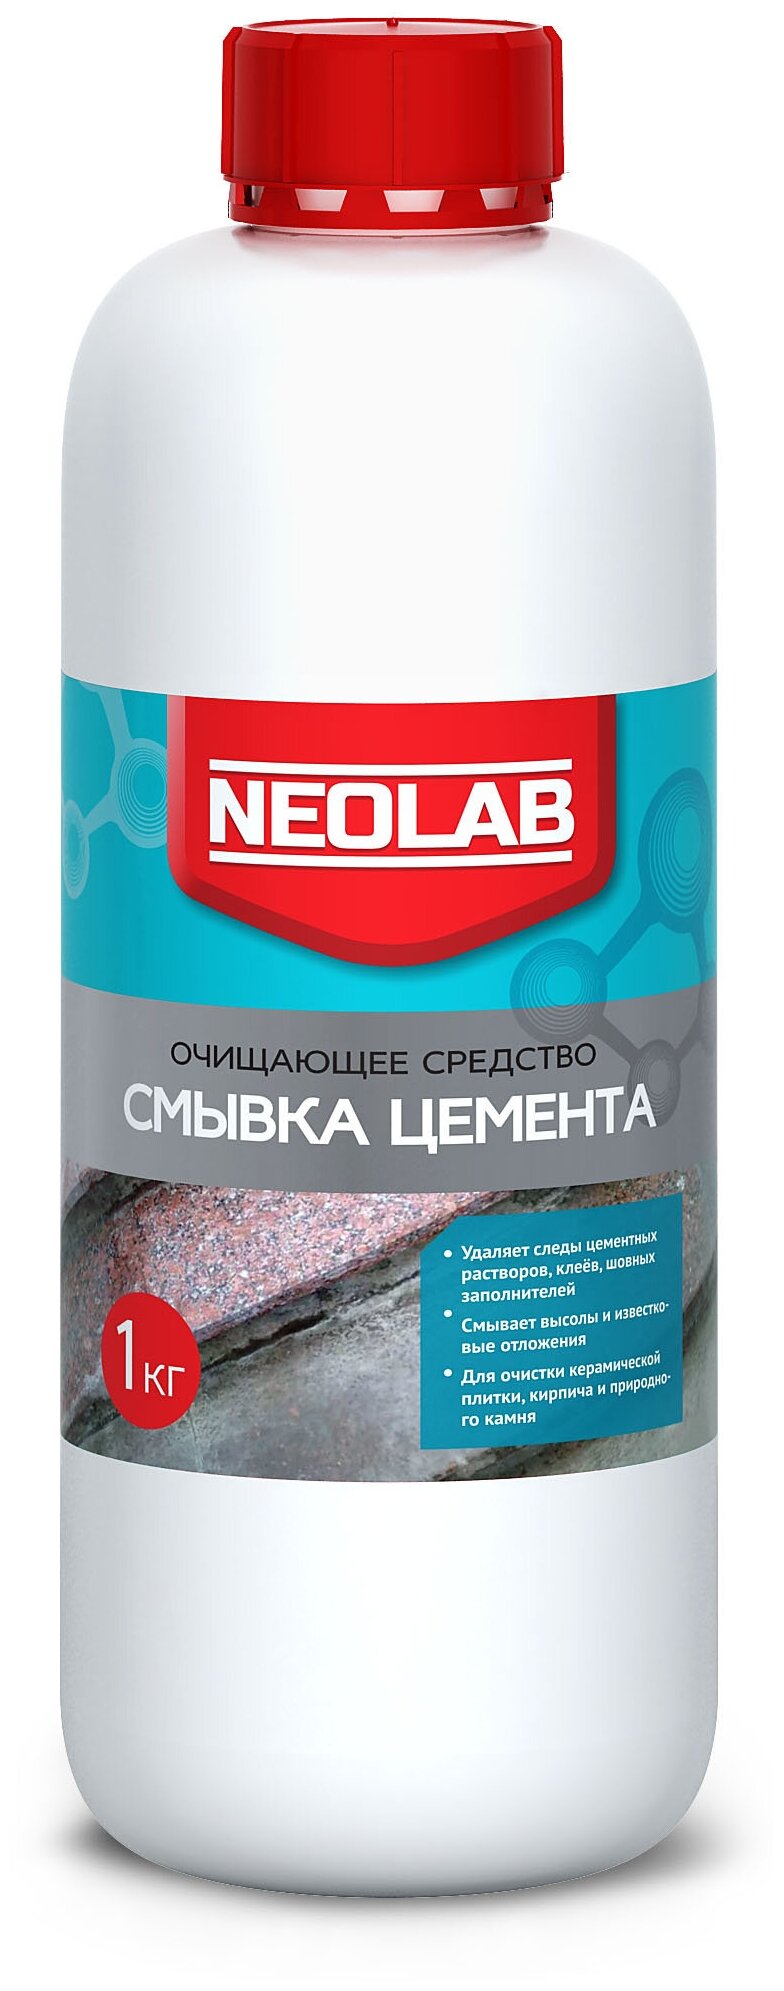 NEOLAB , смывка цемента очищающее средство ,1 кг